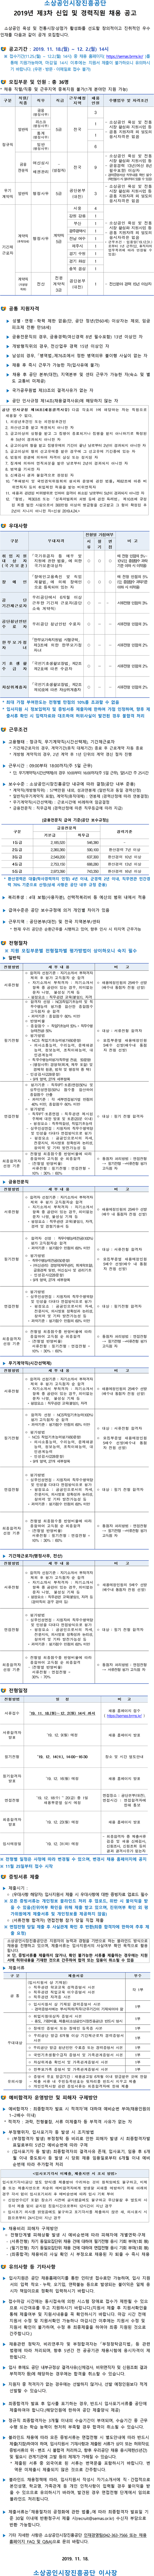 [채용][소상공인시장진흥공단] 2019년 제3차 신입 및 경력직원 채용 공고